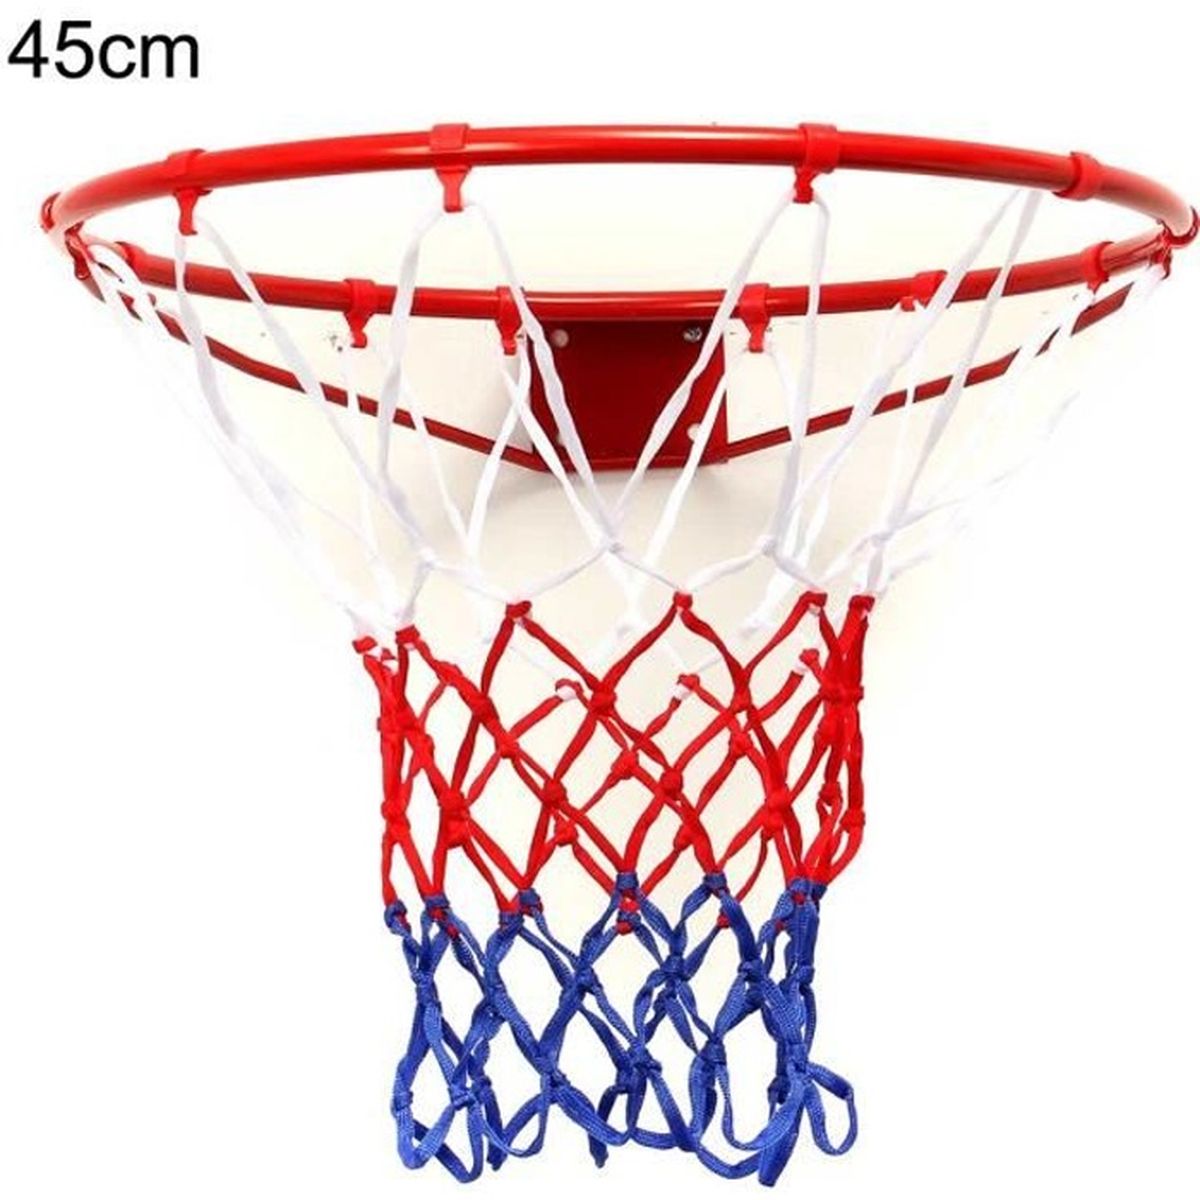 Grand standard filet de basket-ball cerceau filet en nylon bille jant RDLTA